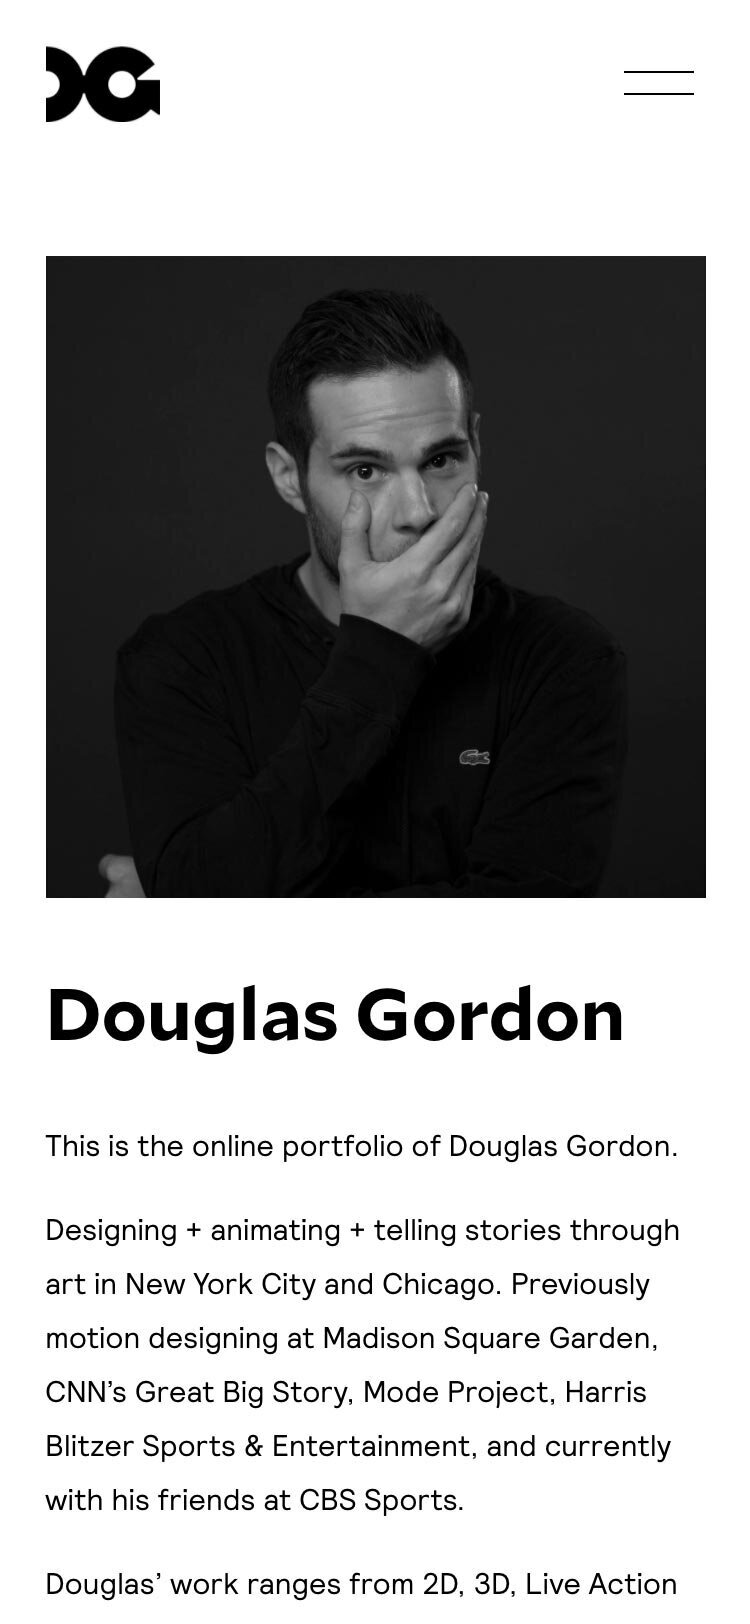 DouglasGordon-about-mobile.jpeg